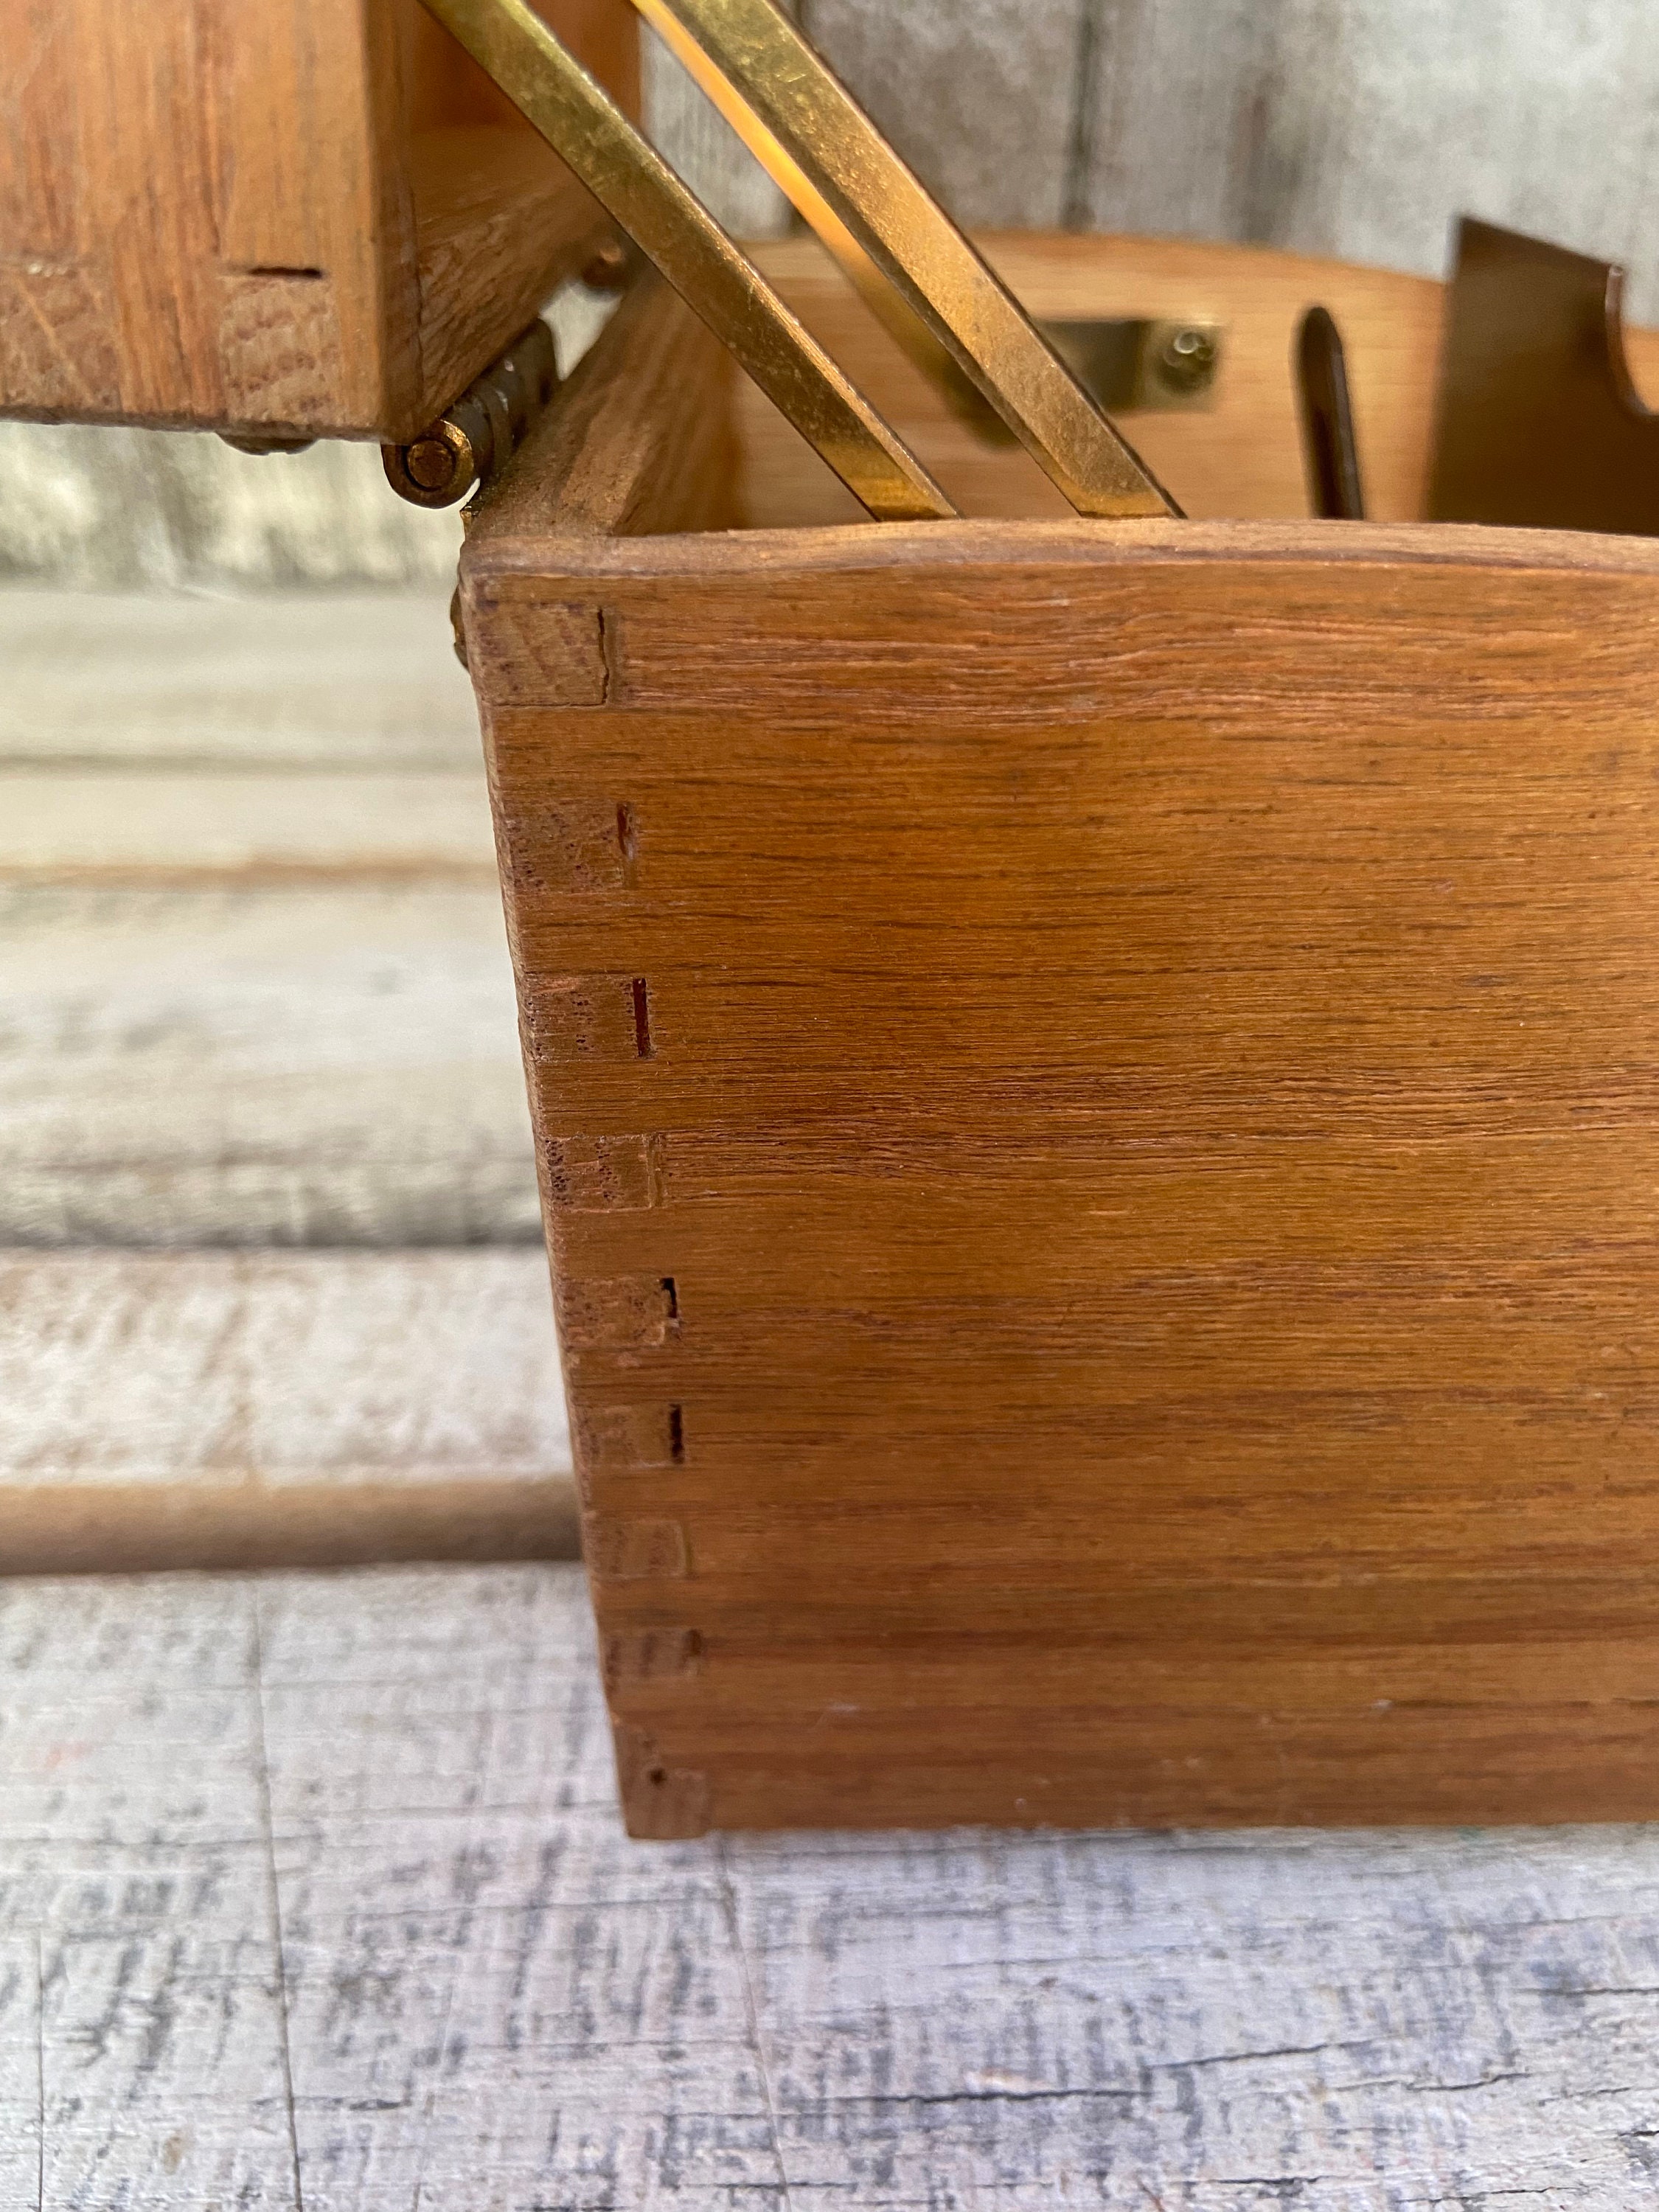 Hztyyier Caja de madera antigua Caja de madera de estilo europeo Caja de madera  vintage, Caja de madera retro para cajas decorativas para joyas – Yaxa  Colombia